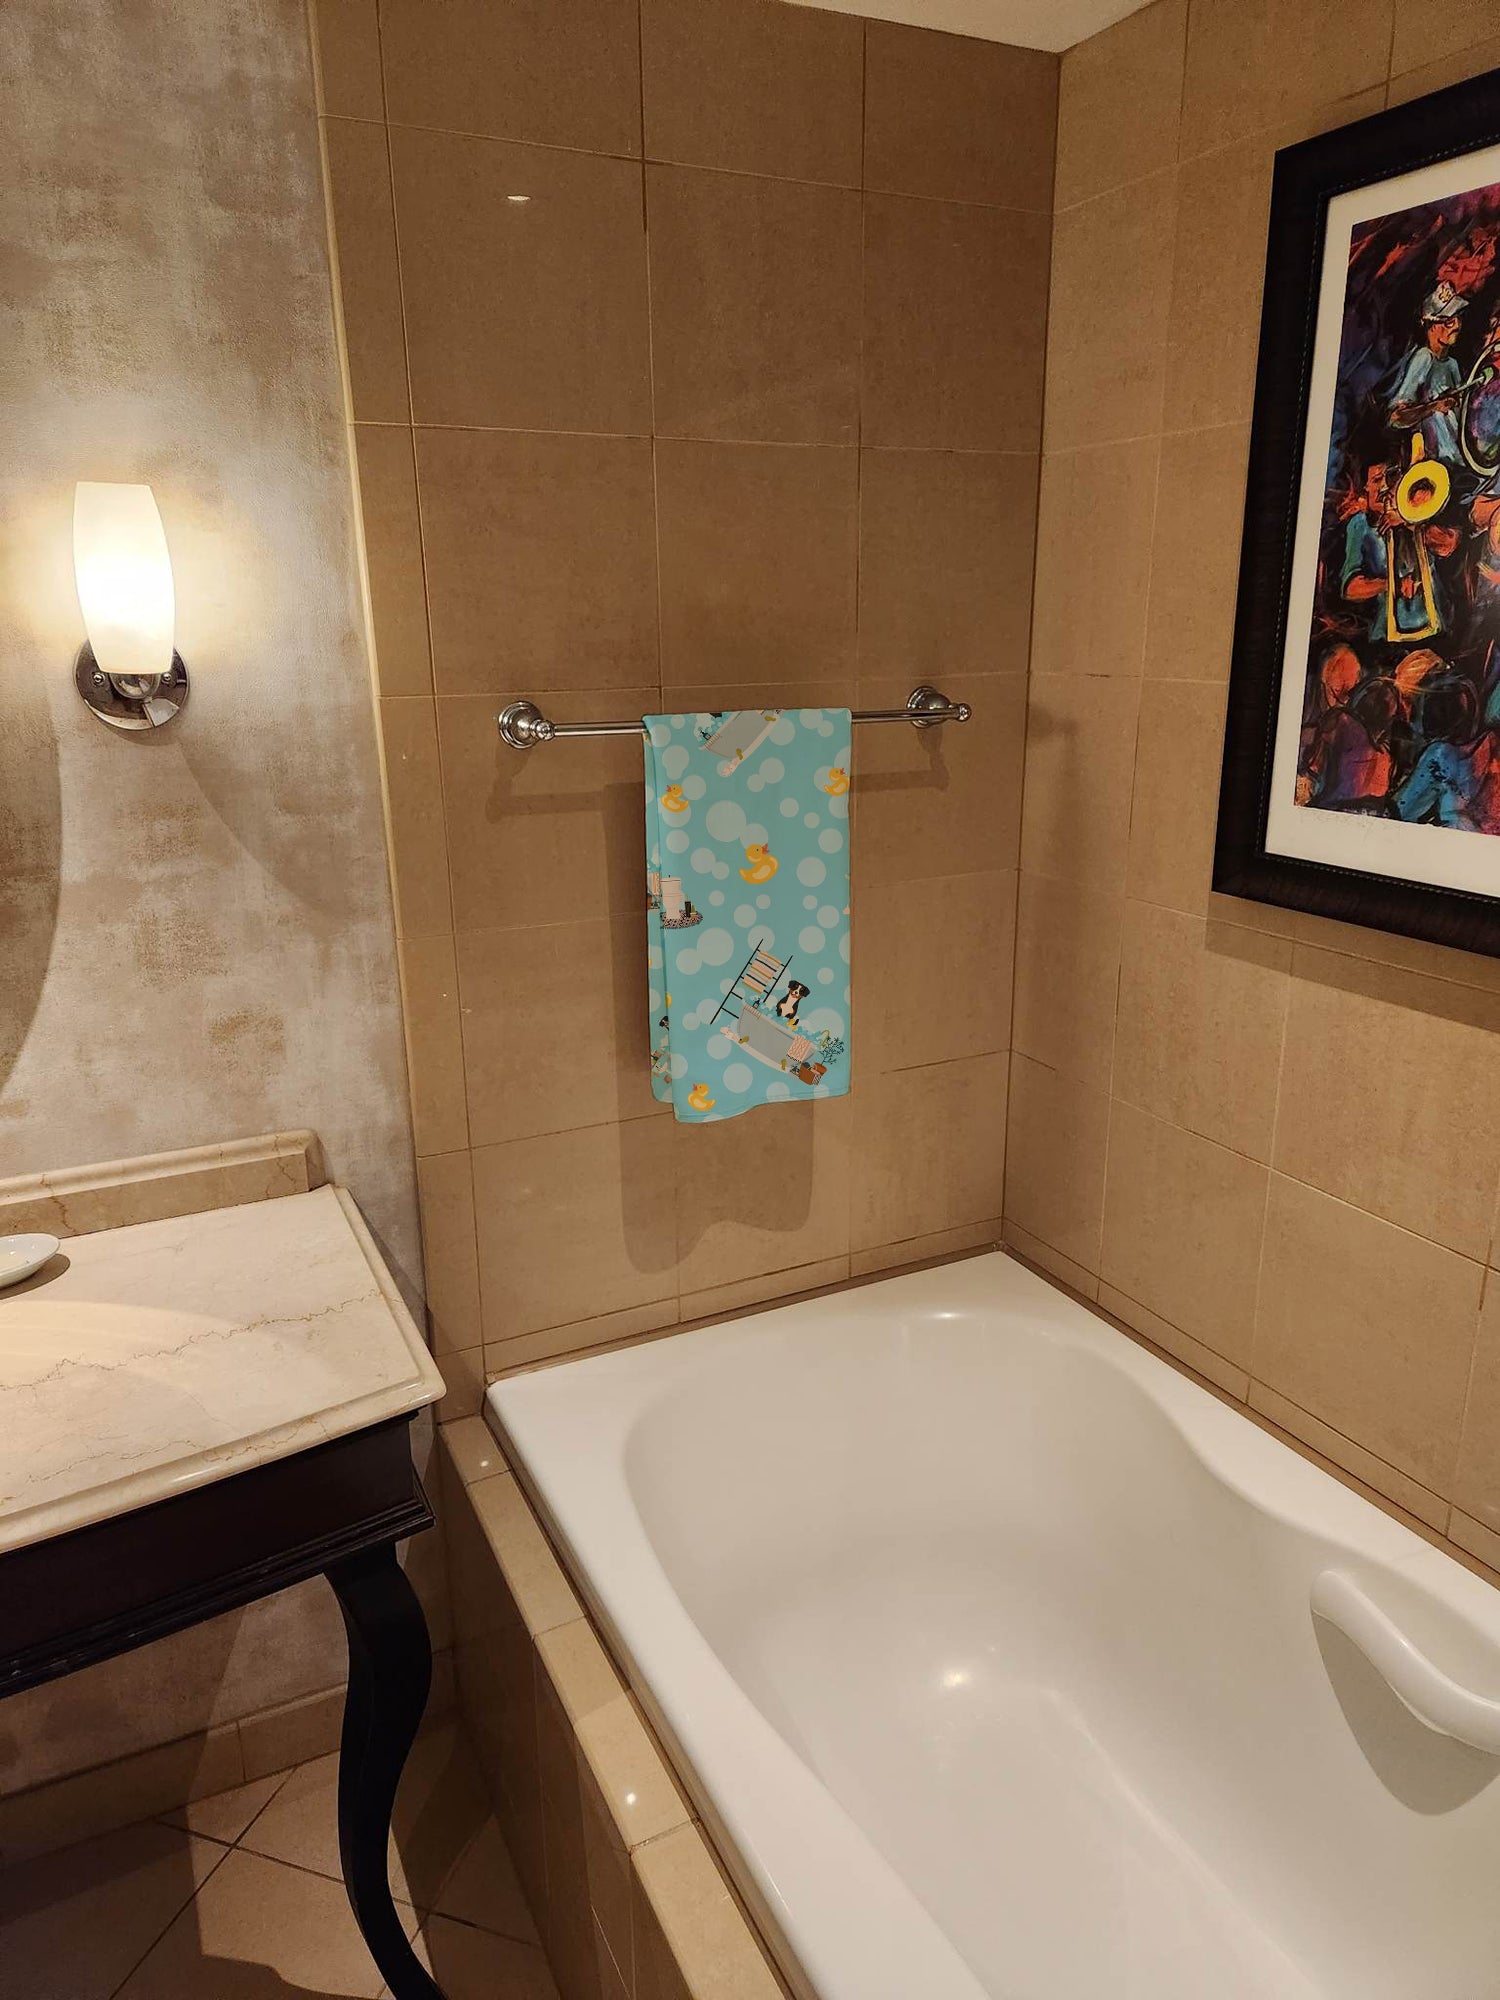 Entlebucher in Bathtub Bath Towel Large